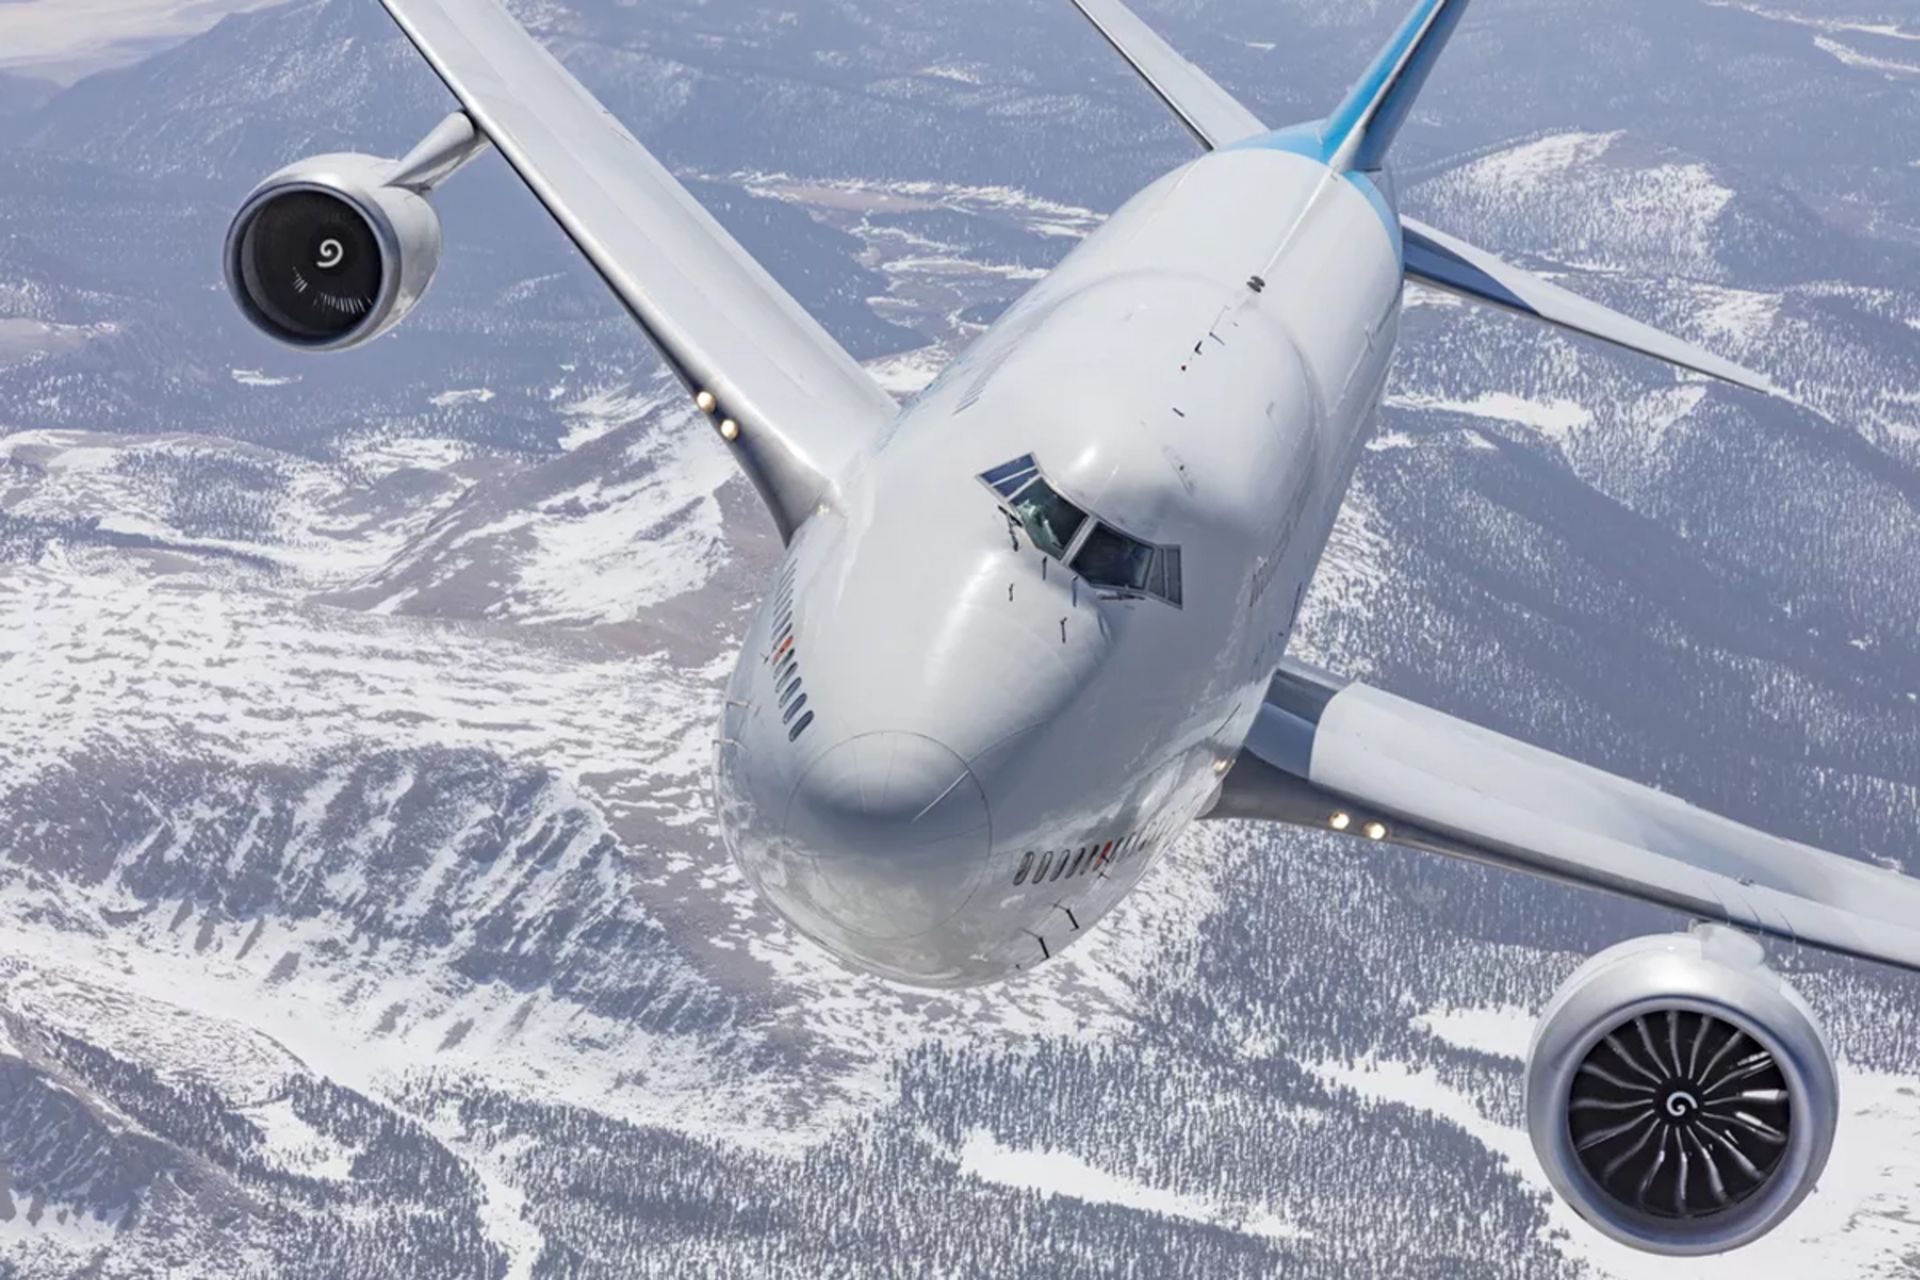 مرجع متخصصين ايران هواپيماي بويينگ 747 با موتور عادي و موتور جت موتور جت GE9X جنرال الكتريك در آسمان از نماي جلو